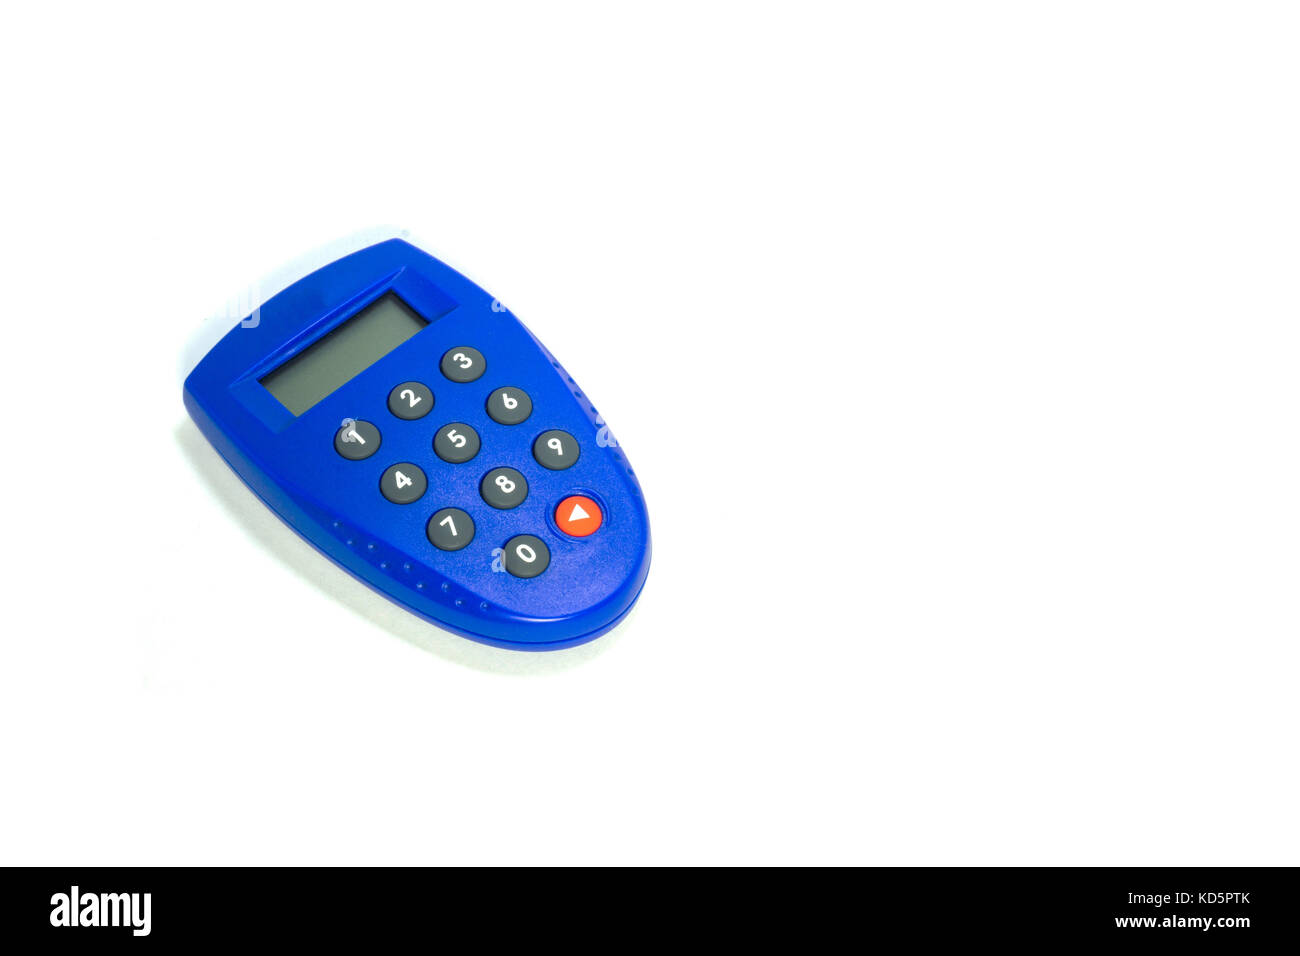 Protezione blu banca chiave token con pulsante e display Foto Stock